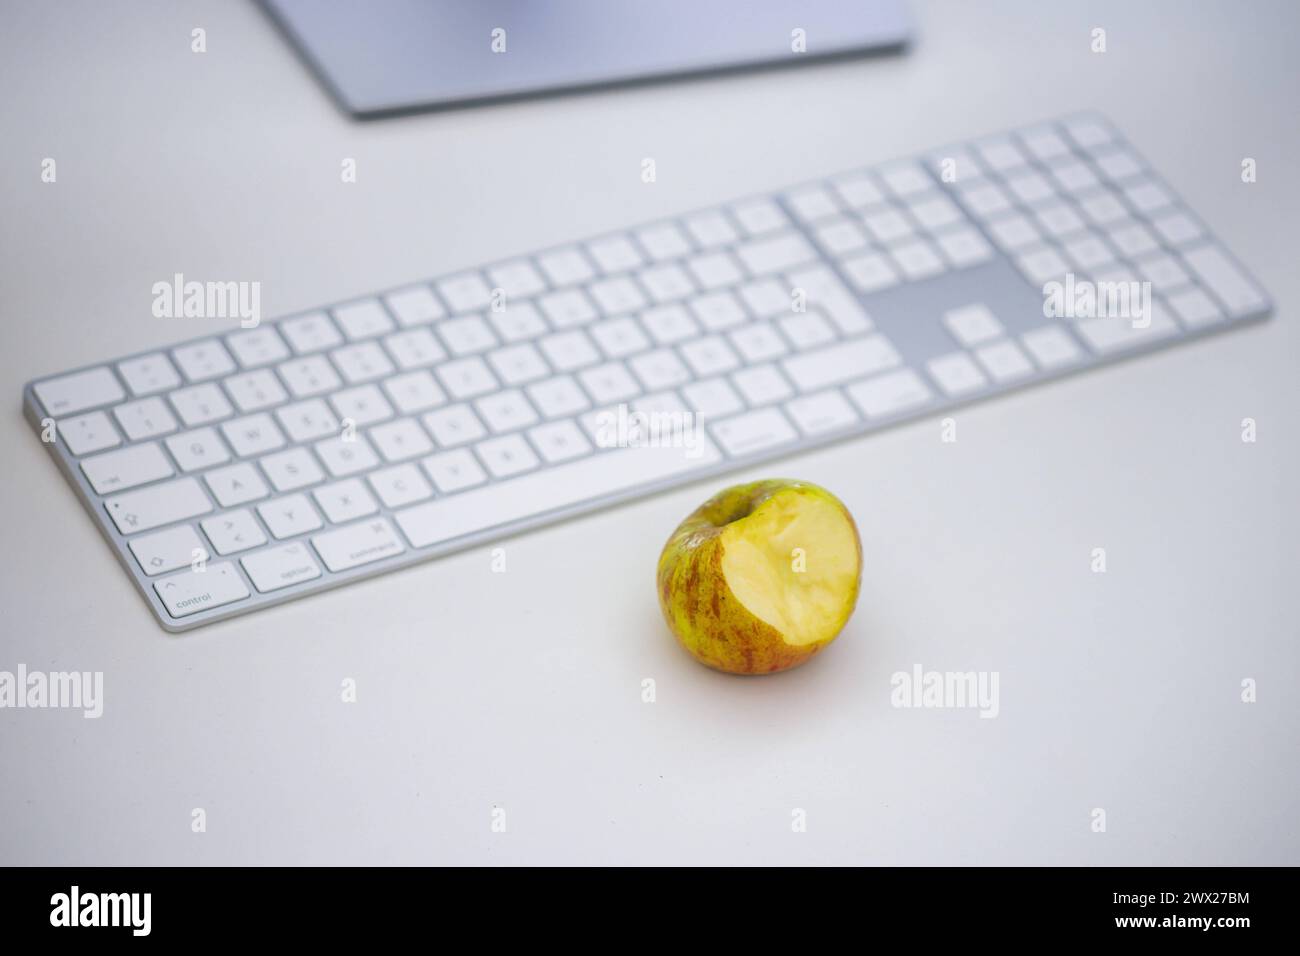 Symbolfoto zum Thema öÄÃ Gesunde Ernaehrung am Arbeitsplatz öÄÃ . Ein Apfel liegt neben einer Tastatur auf einem Schreibtisch im Buero. Berlin, 27.03. Stock Photo